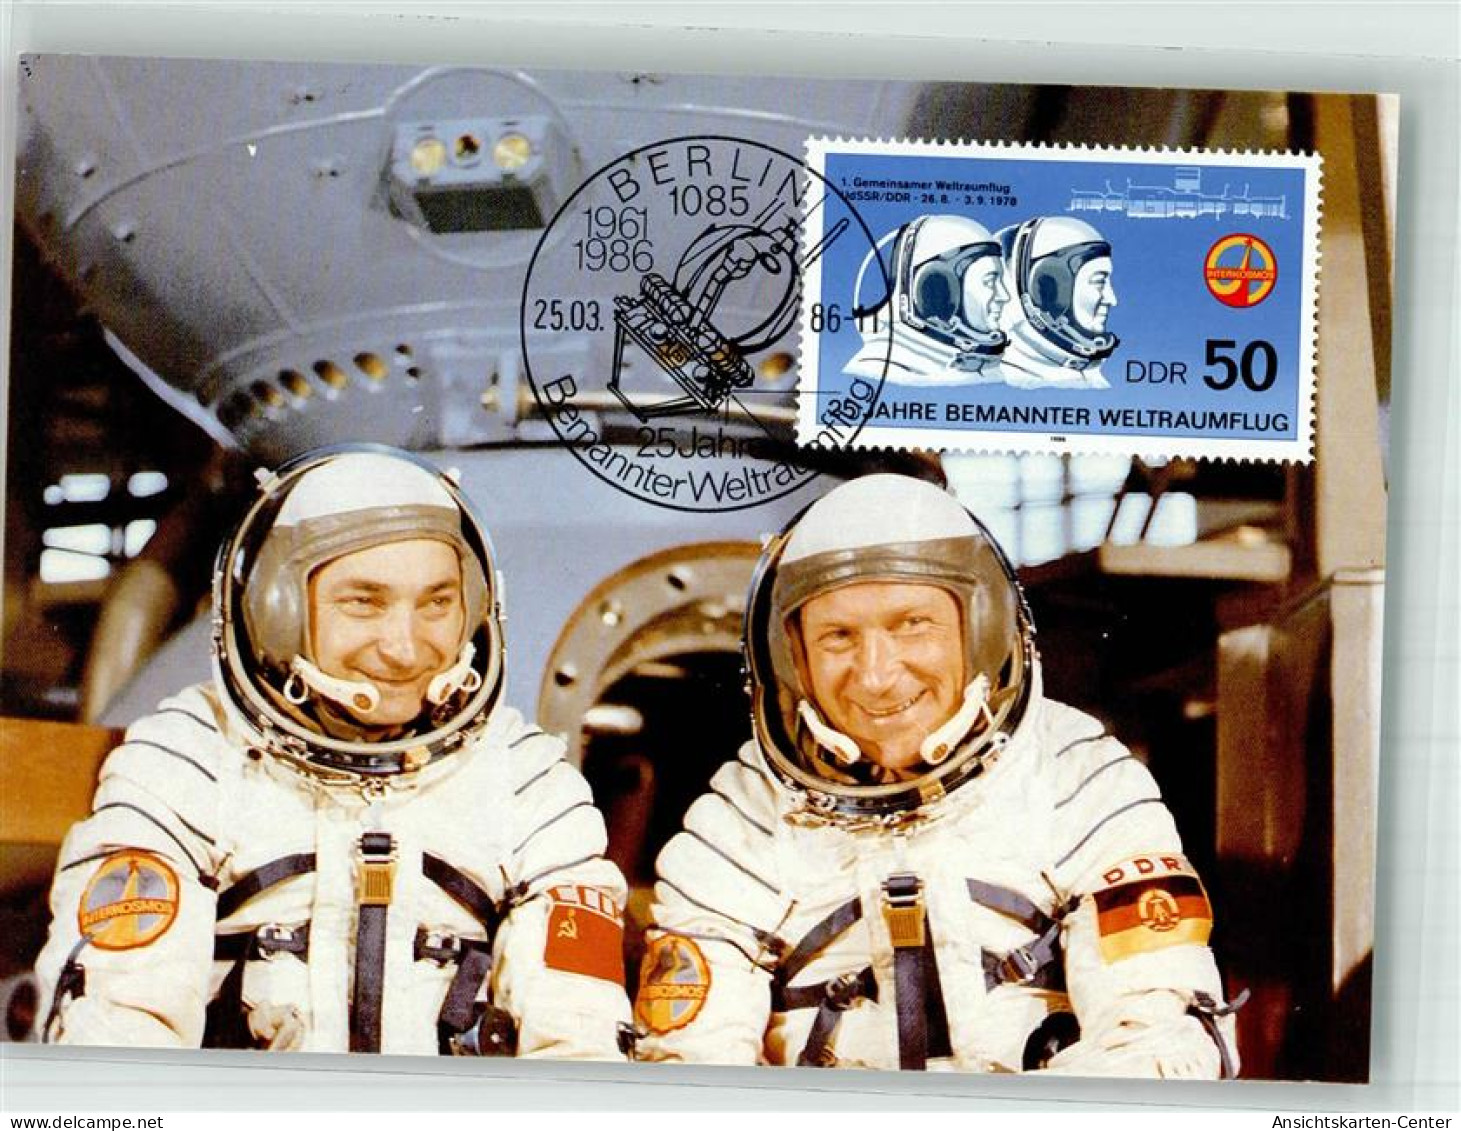 39867307 - Astronauten Waleri Bykowski Und Sigmund Jaehn 1 Gemeinsamer Weltraumflug 1978 Sondermarke Sonderstempel - Raumfahrt